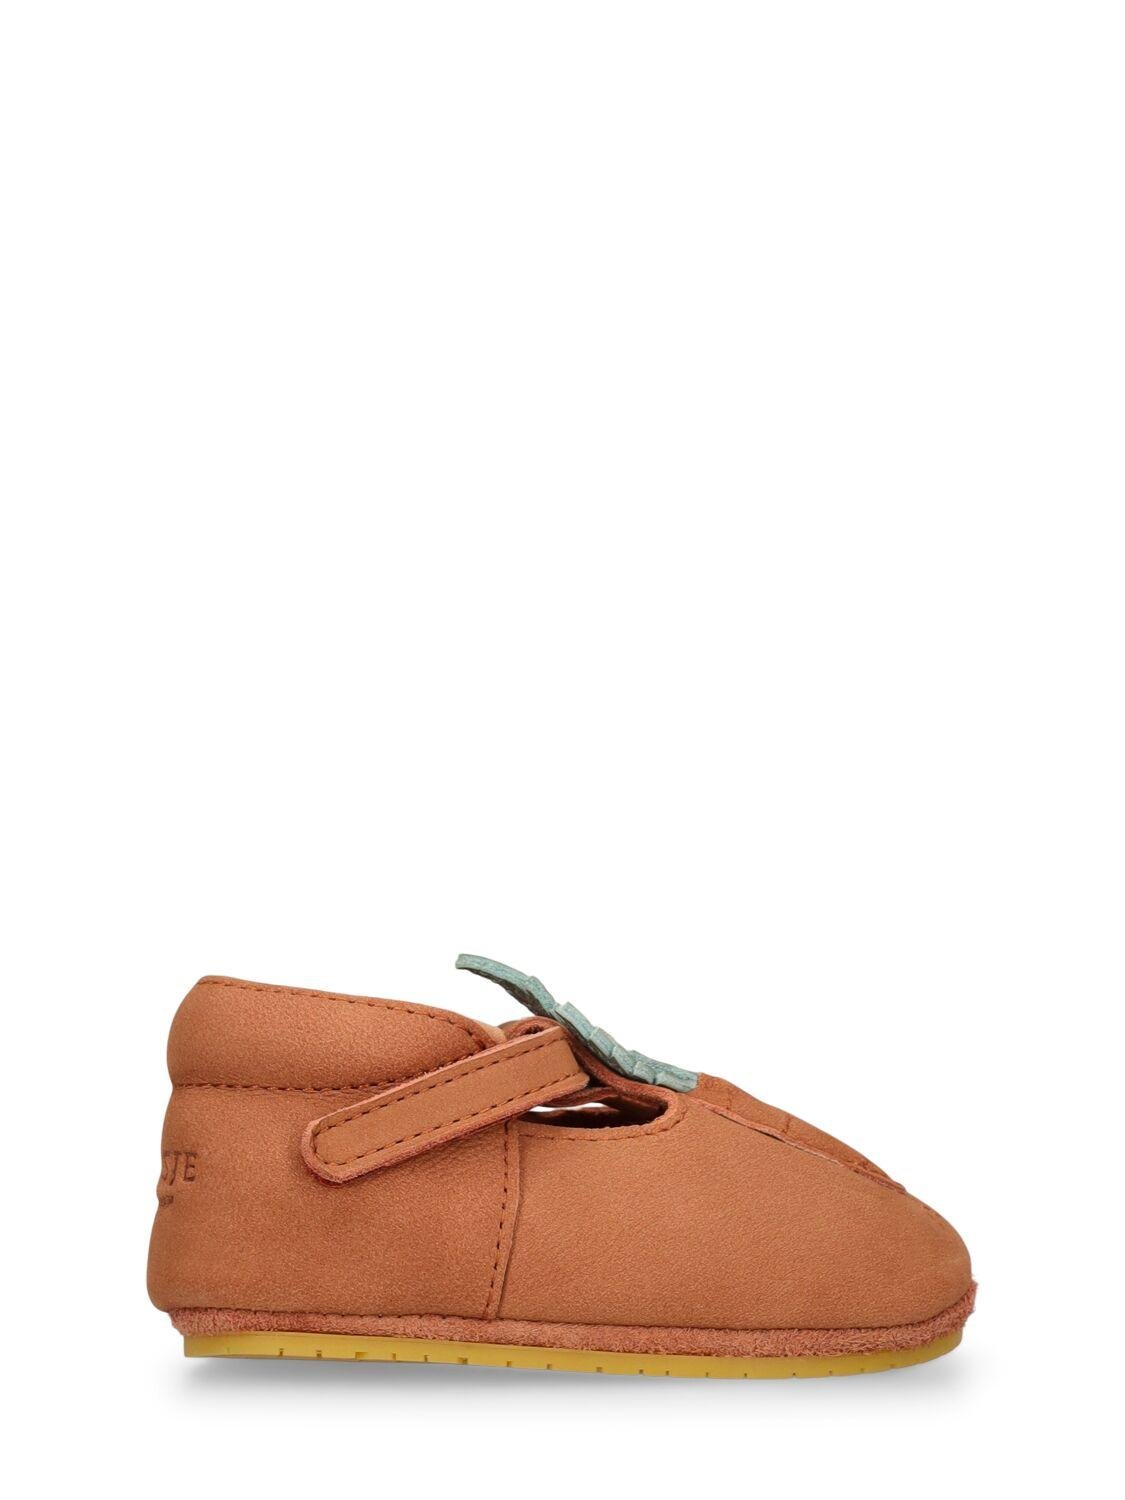 Carrot Leather Pre-walker Shoes by DONSJE